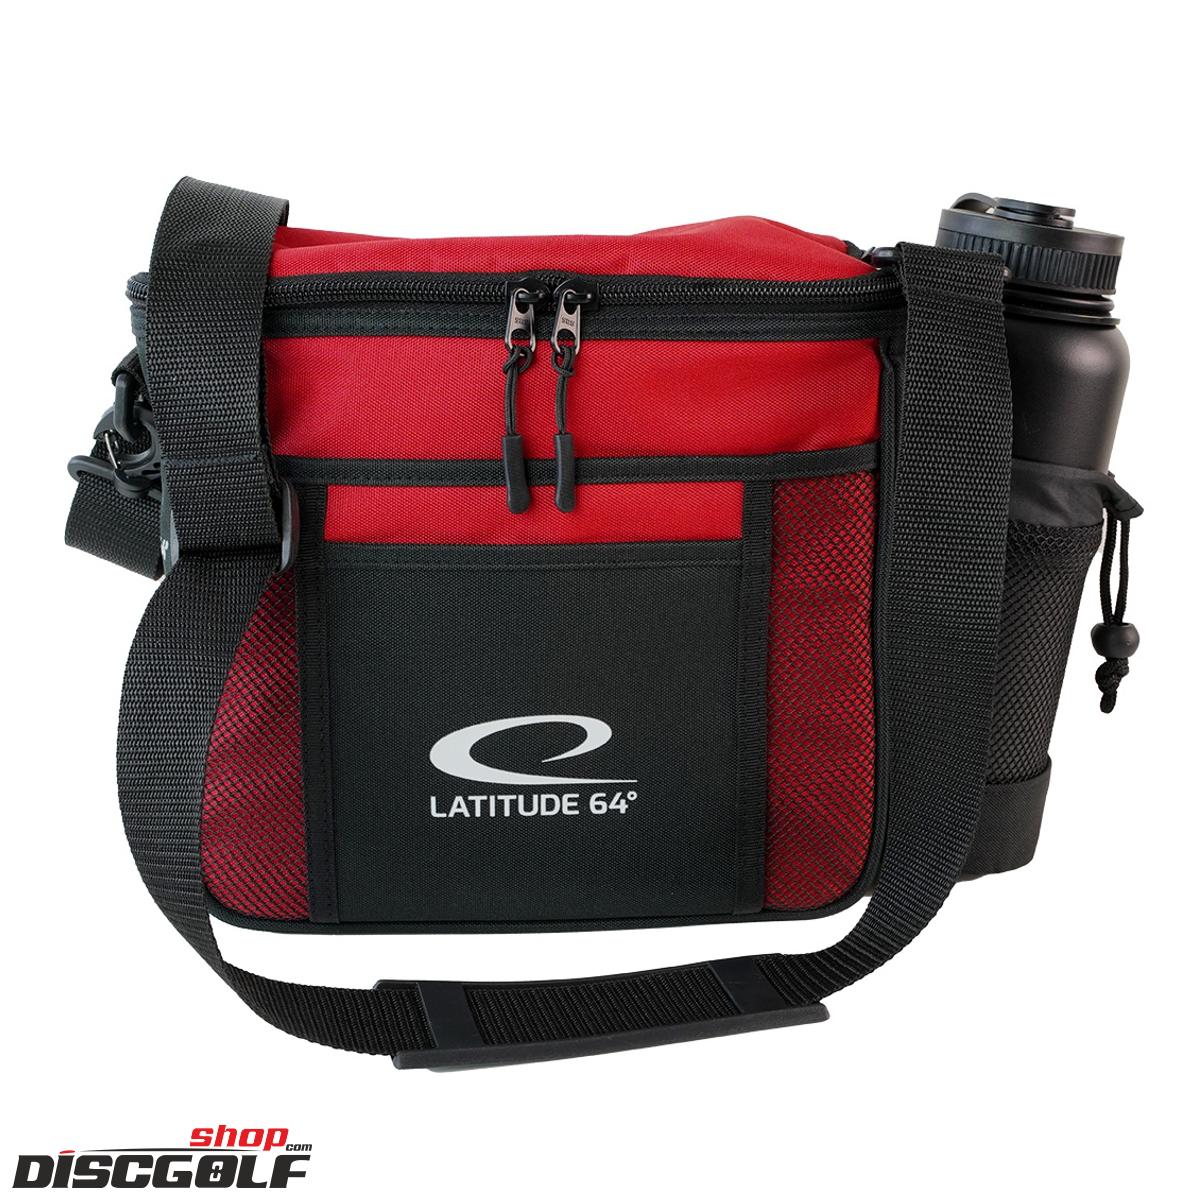 Latitude 64º Slim Bag Slimbag V.3 - Černo-červená/Black-red (discgolf)